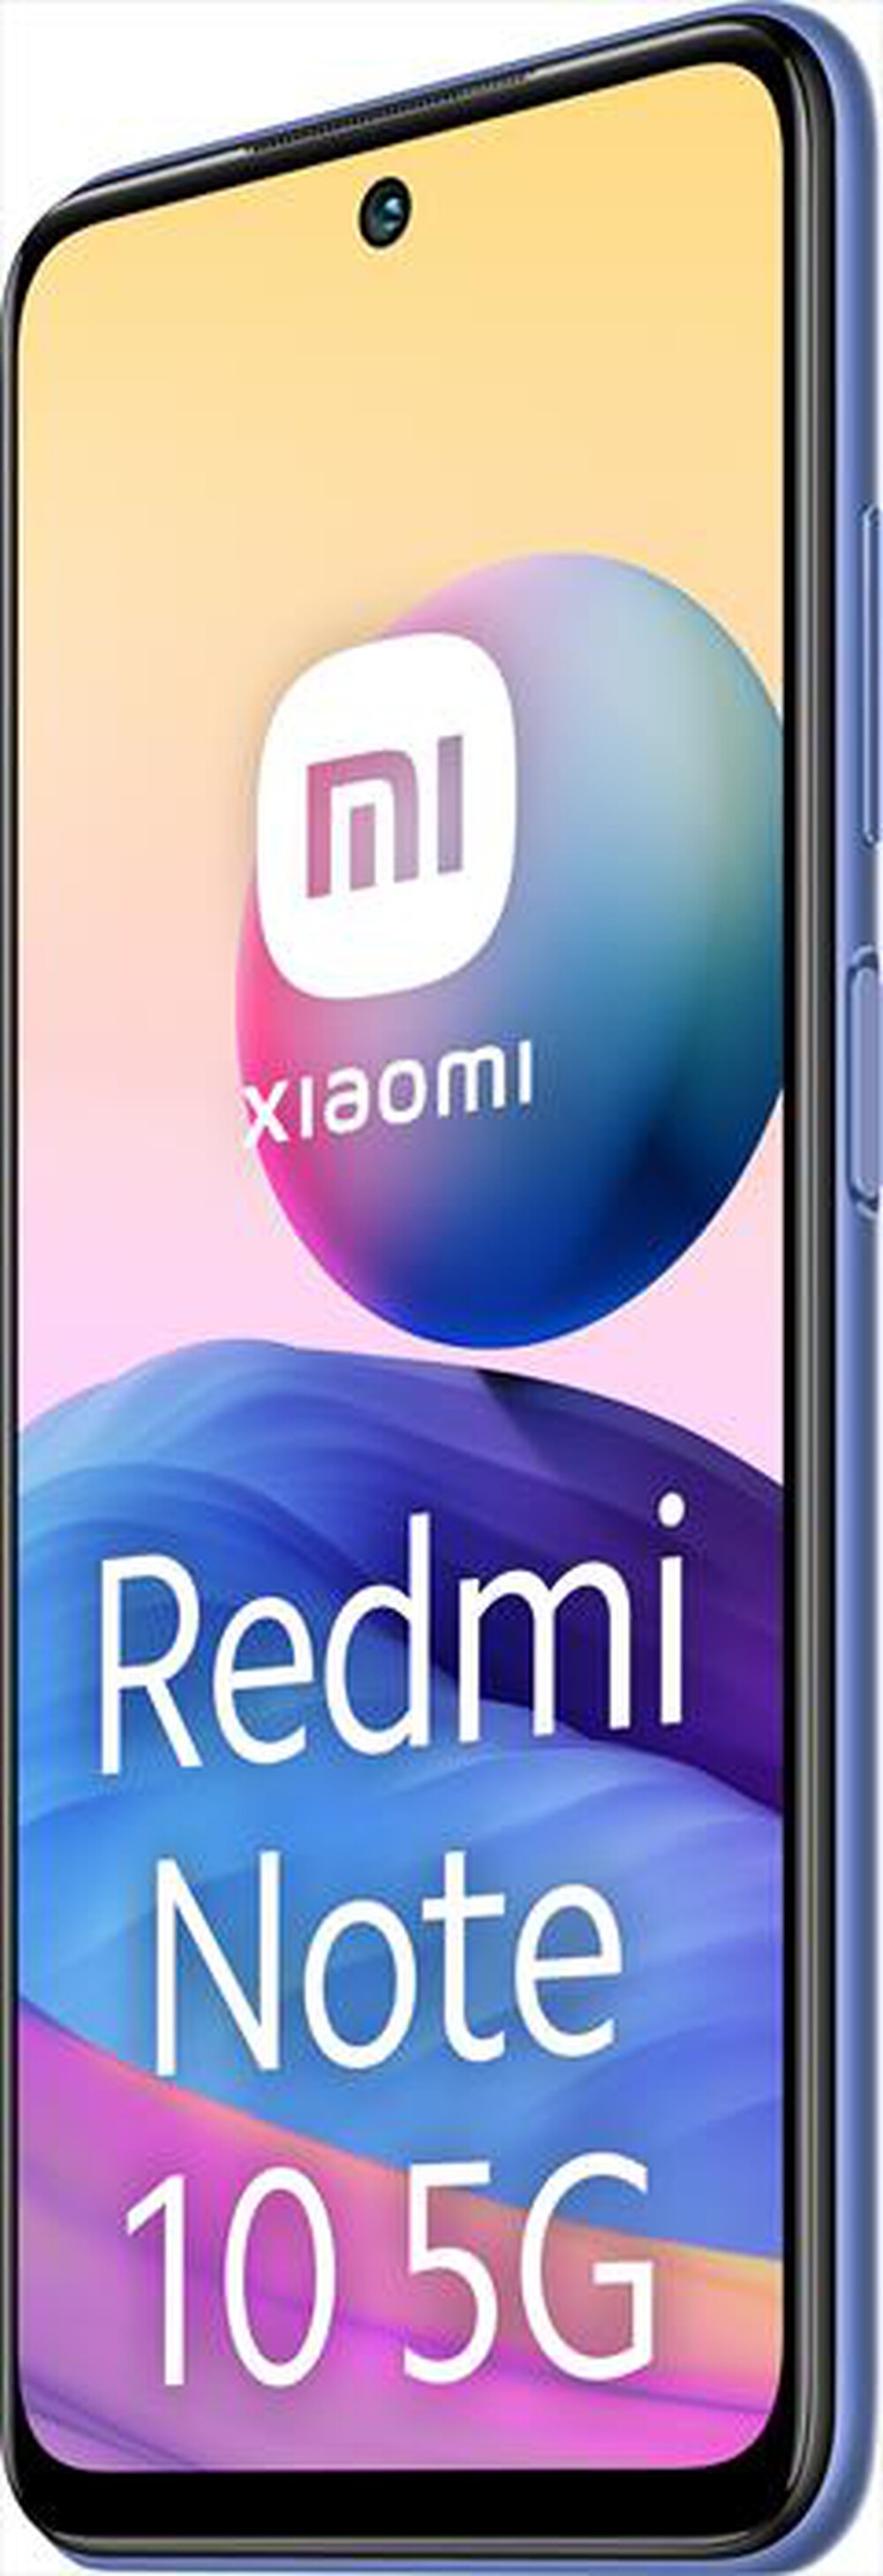 "XIAOMI - REDMI NOTE 10 5G 4+128GB - Nighttime Blue"